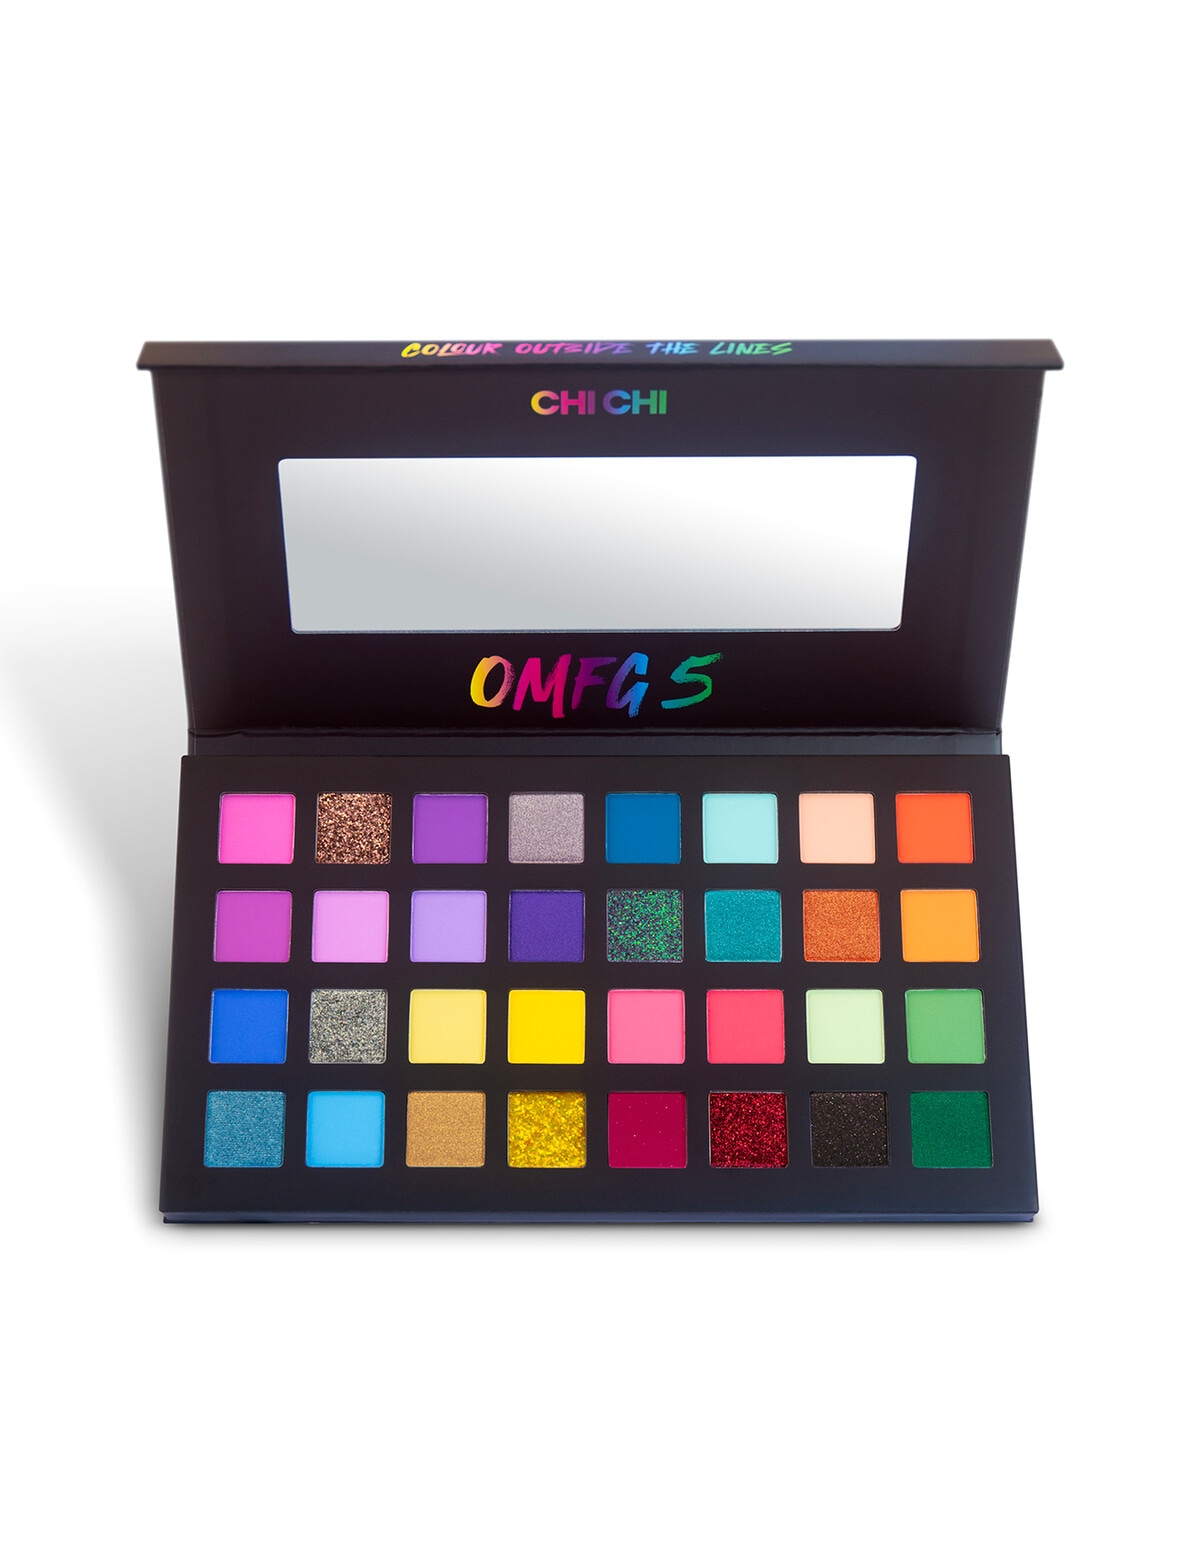 Chi Omfg 5 Palette 32 Shades Eyes